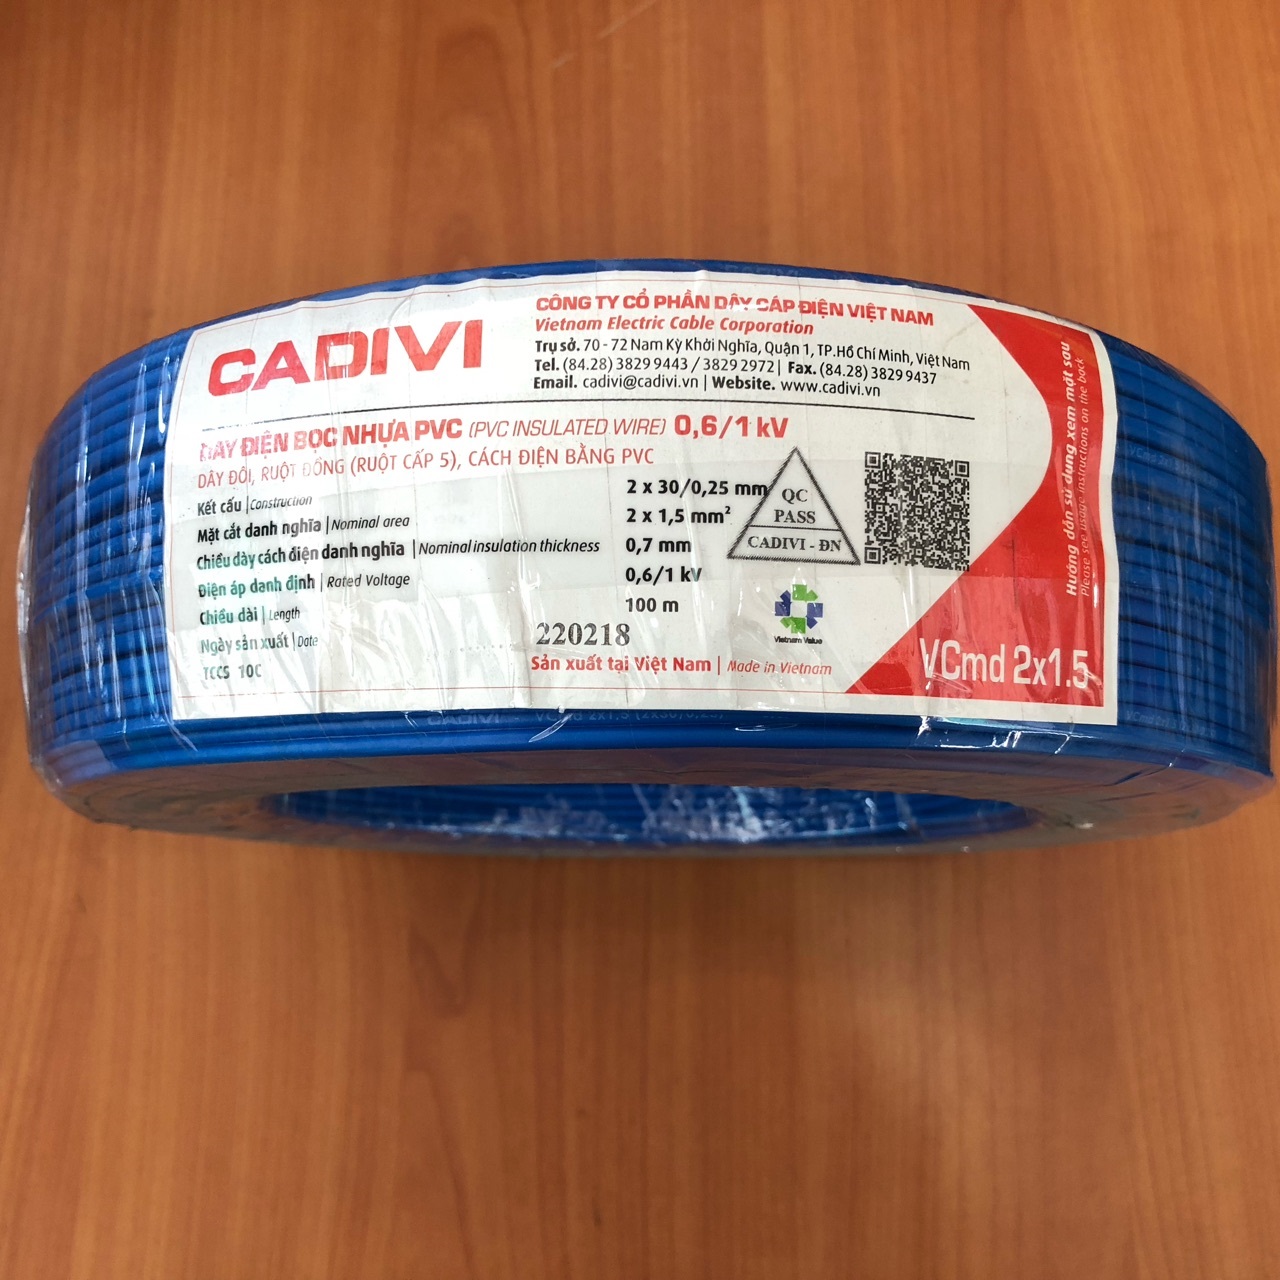 Dây điện Cadivi VCMD 2x1.5 màu xanh, 0.6/1KV, cuộn 100m